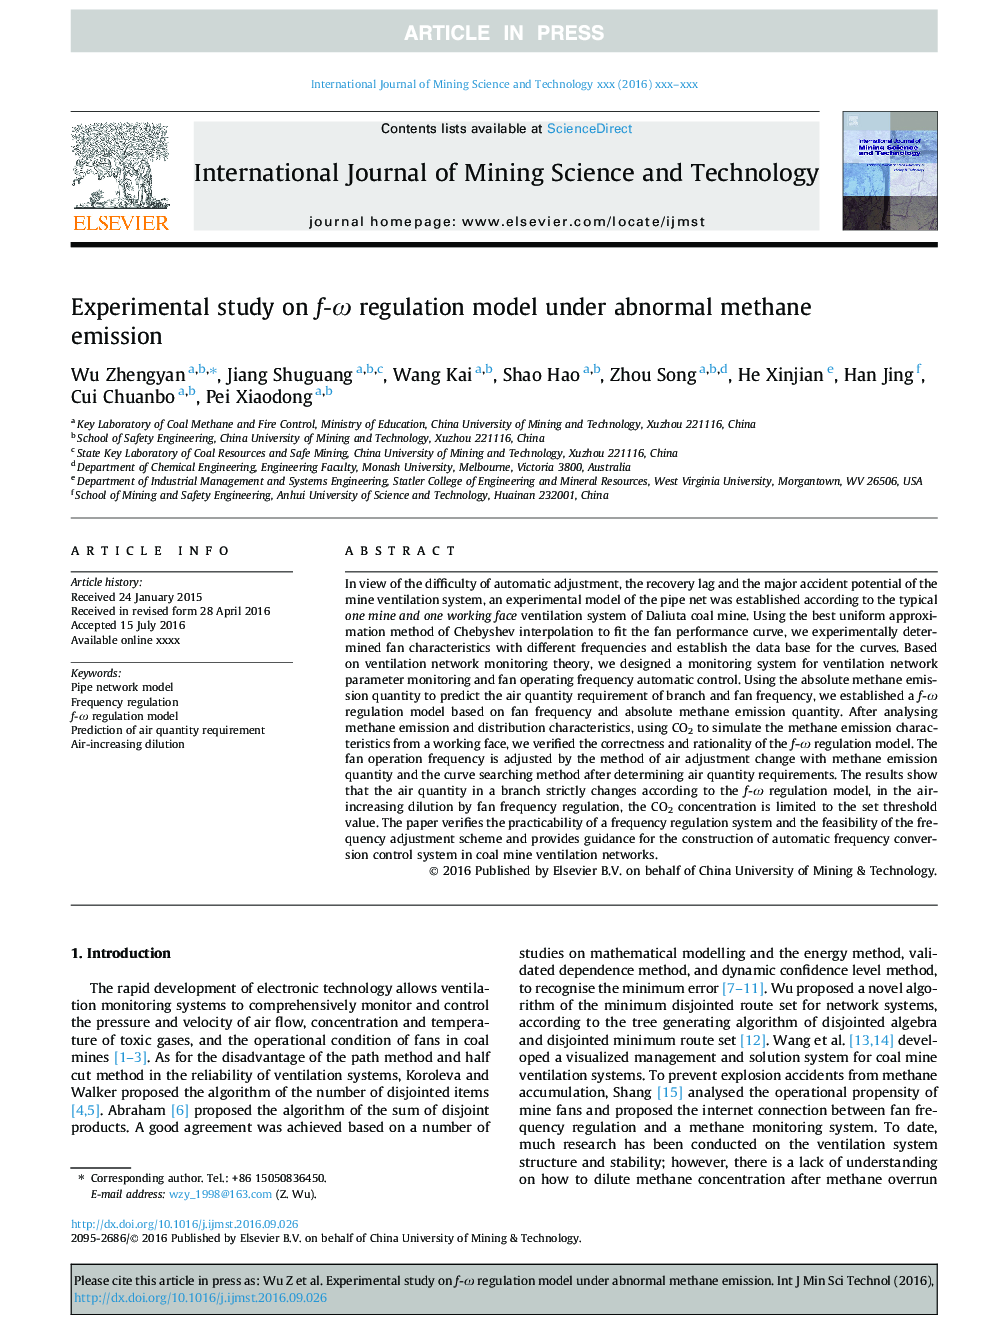 Experimental study on f-Ï regulation model under abnormal methane emission